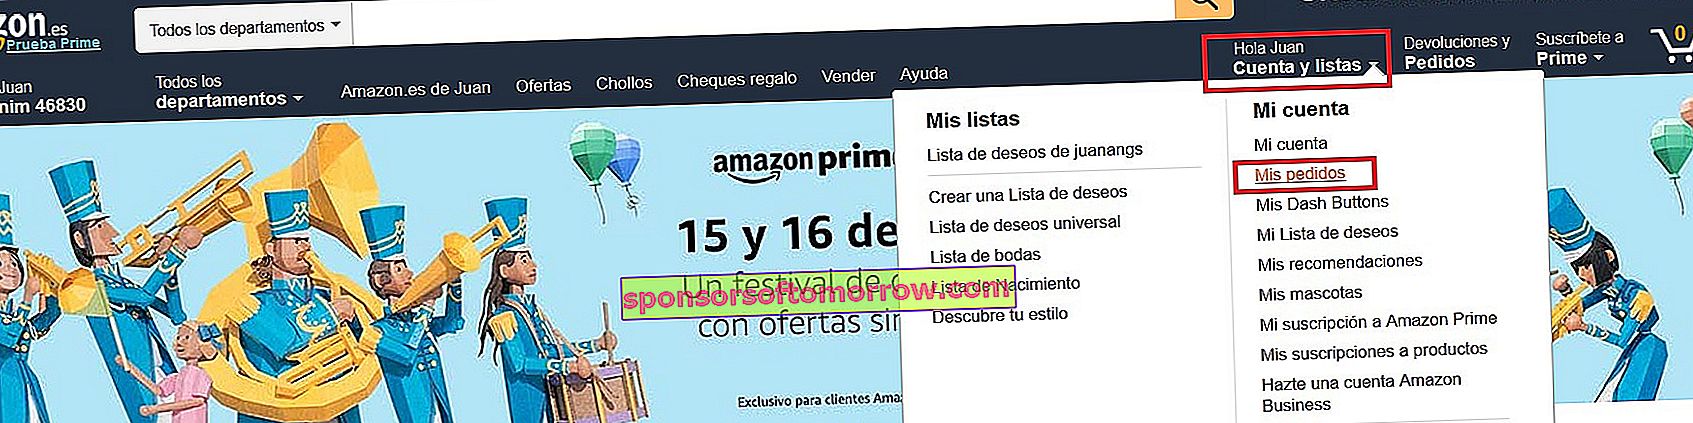 Wie ist die Garantie für überholte Amazon-Produkte? 6